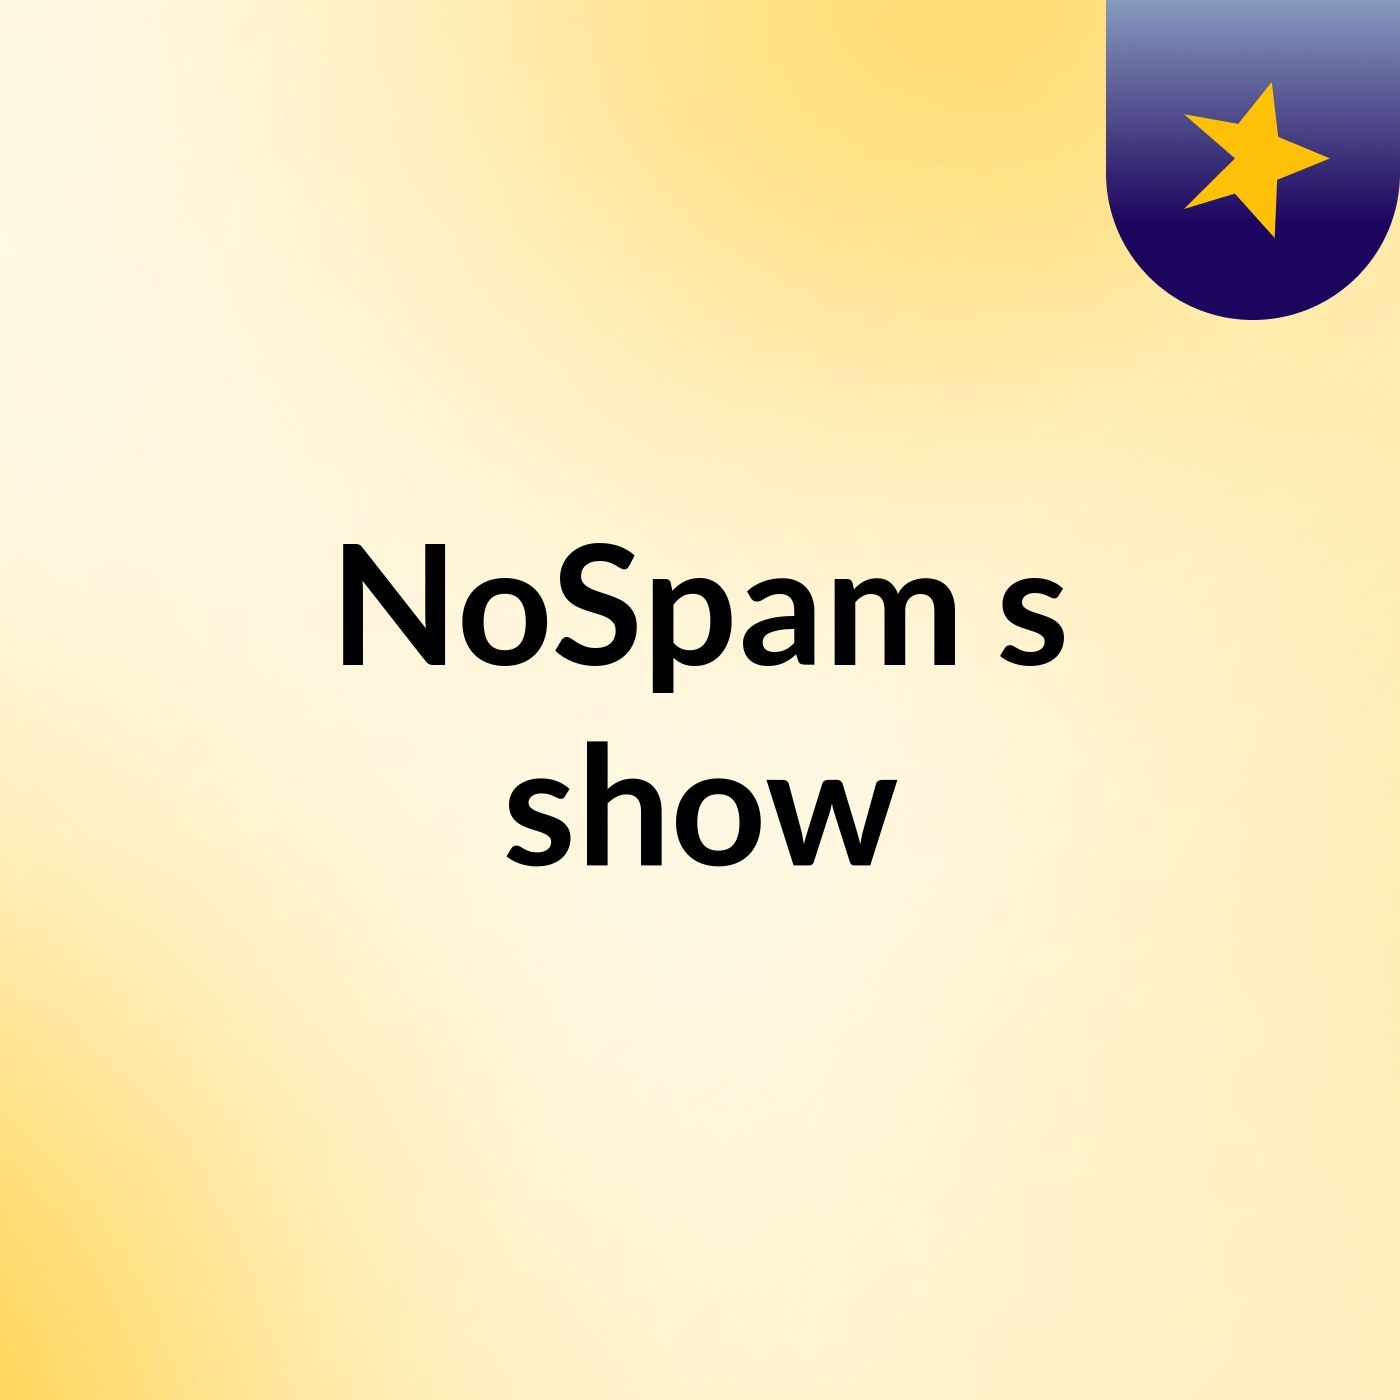 NoSpam's show